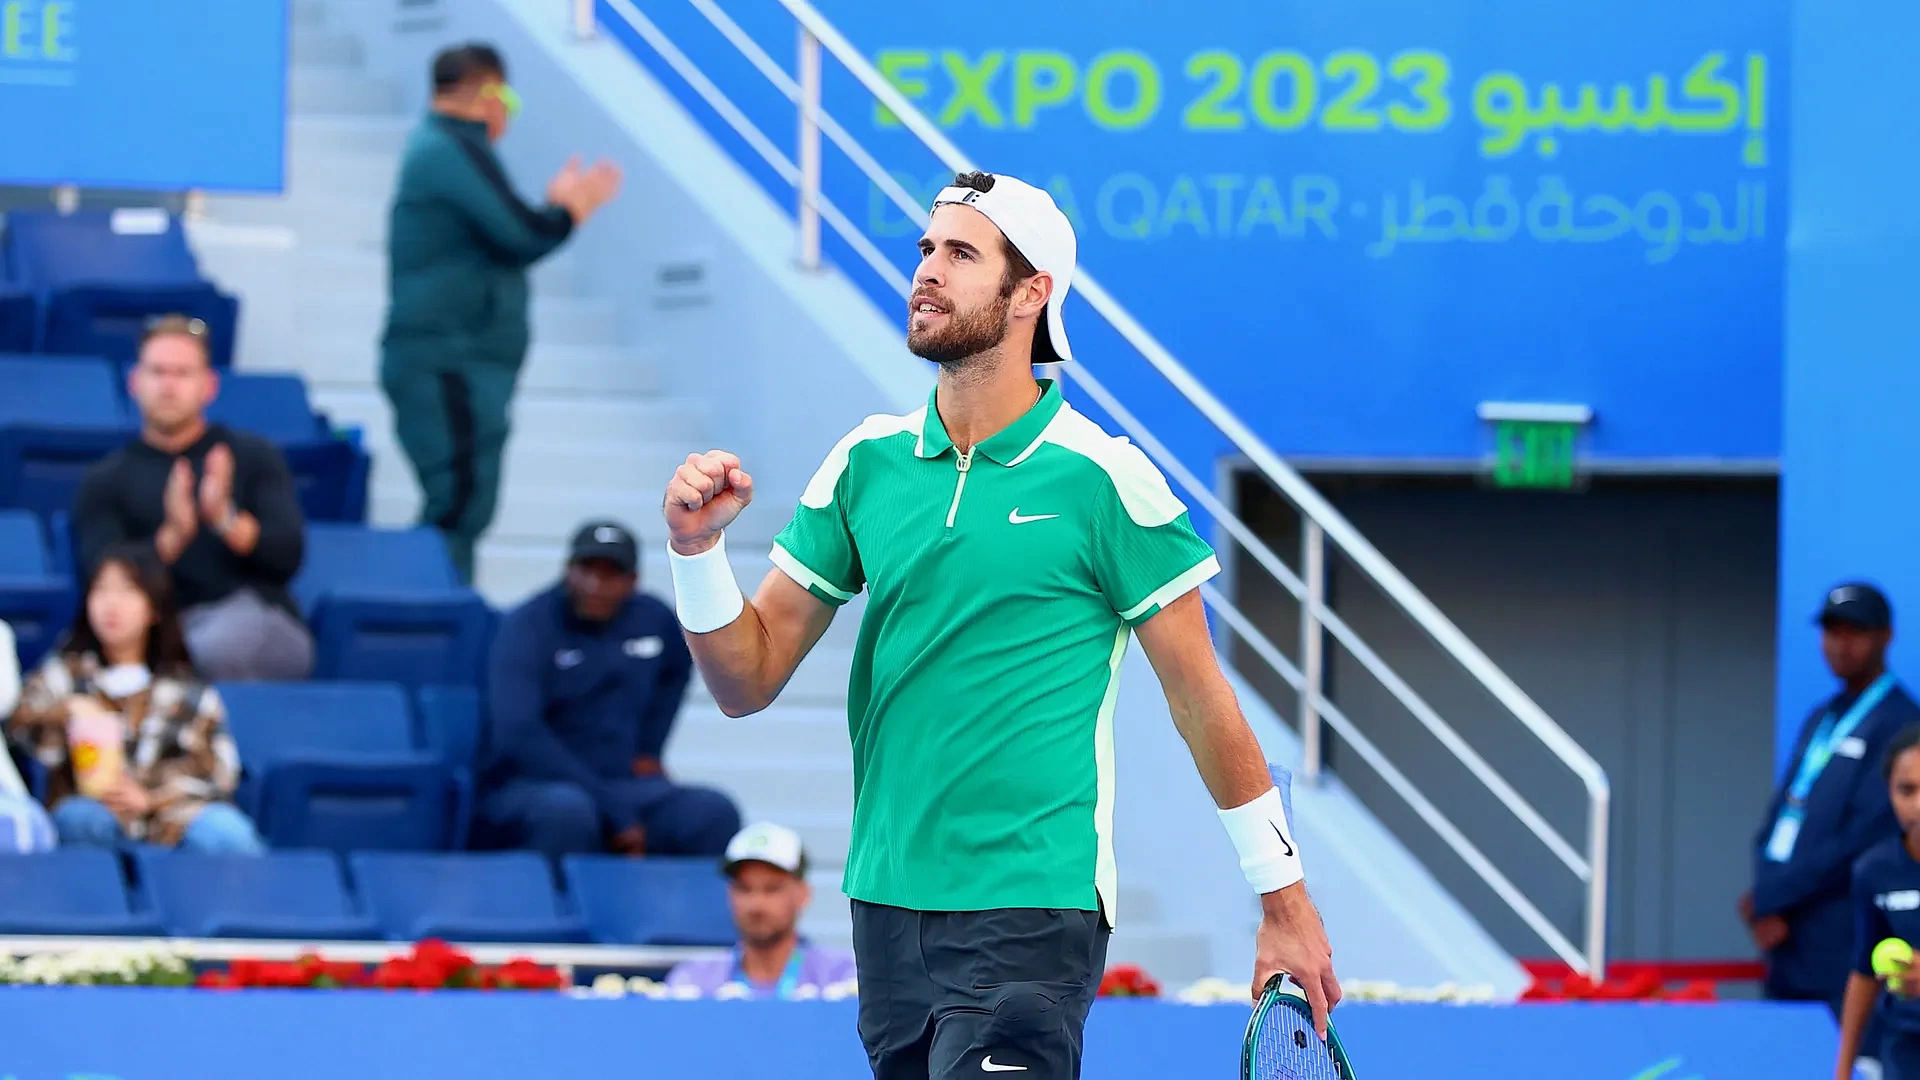 Карен Хачанов стал полуфиналистом на турнире ATP 250 в Дохе